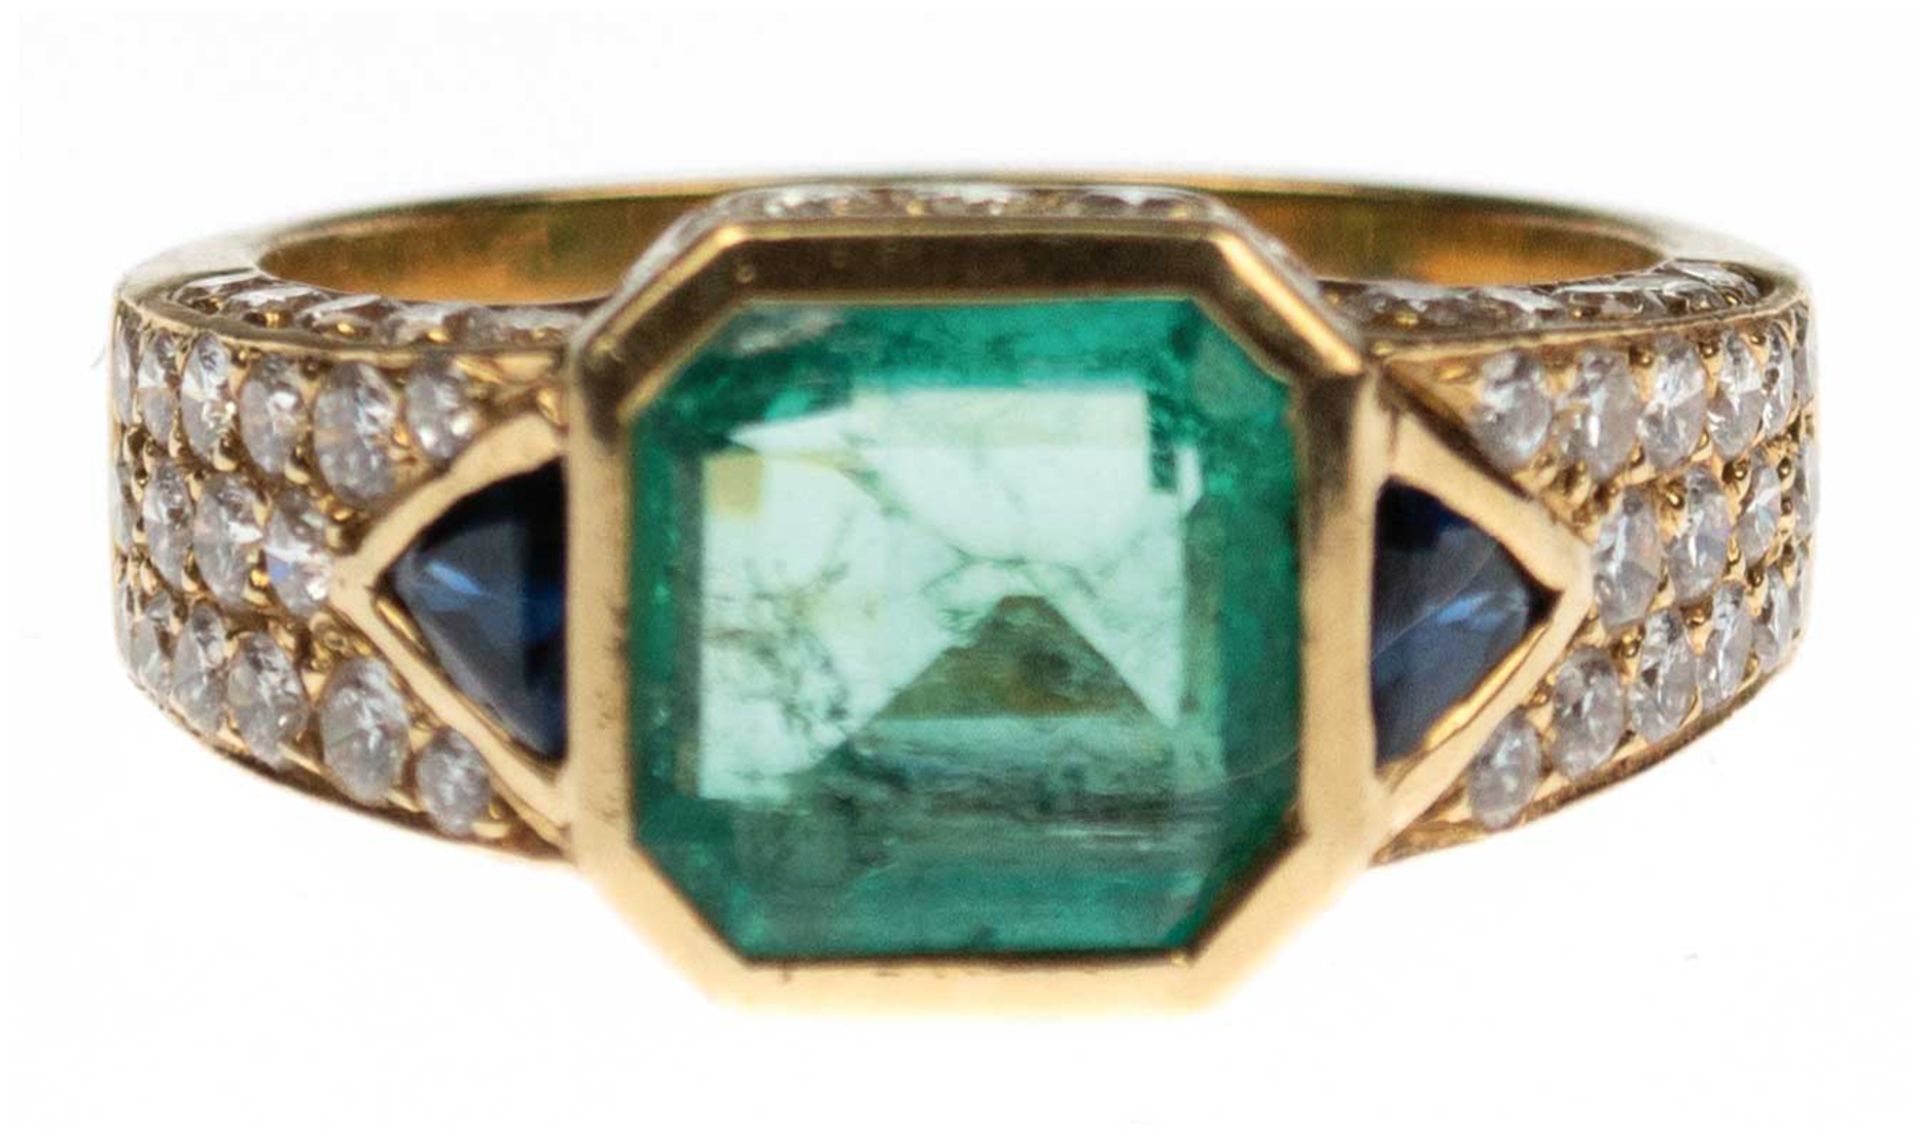 Ring, 750er GG, ges. 8,1 g, achteckiger Smaragd von ca. 3,0 ct. mit natürlichem Jardin,Schiene